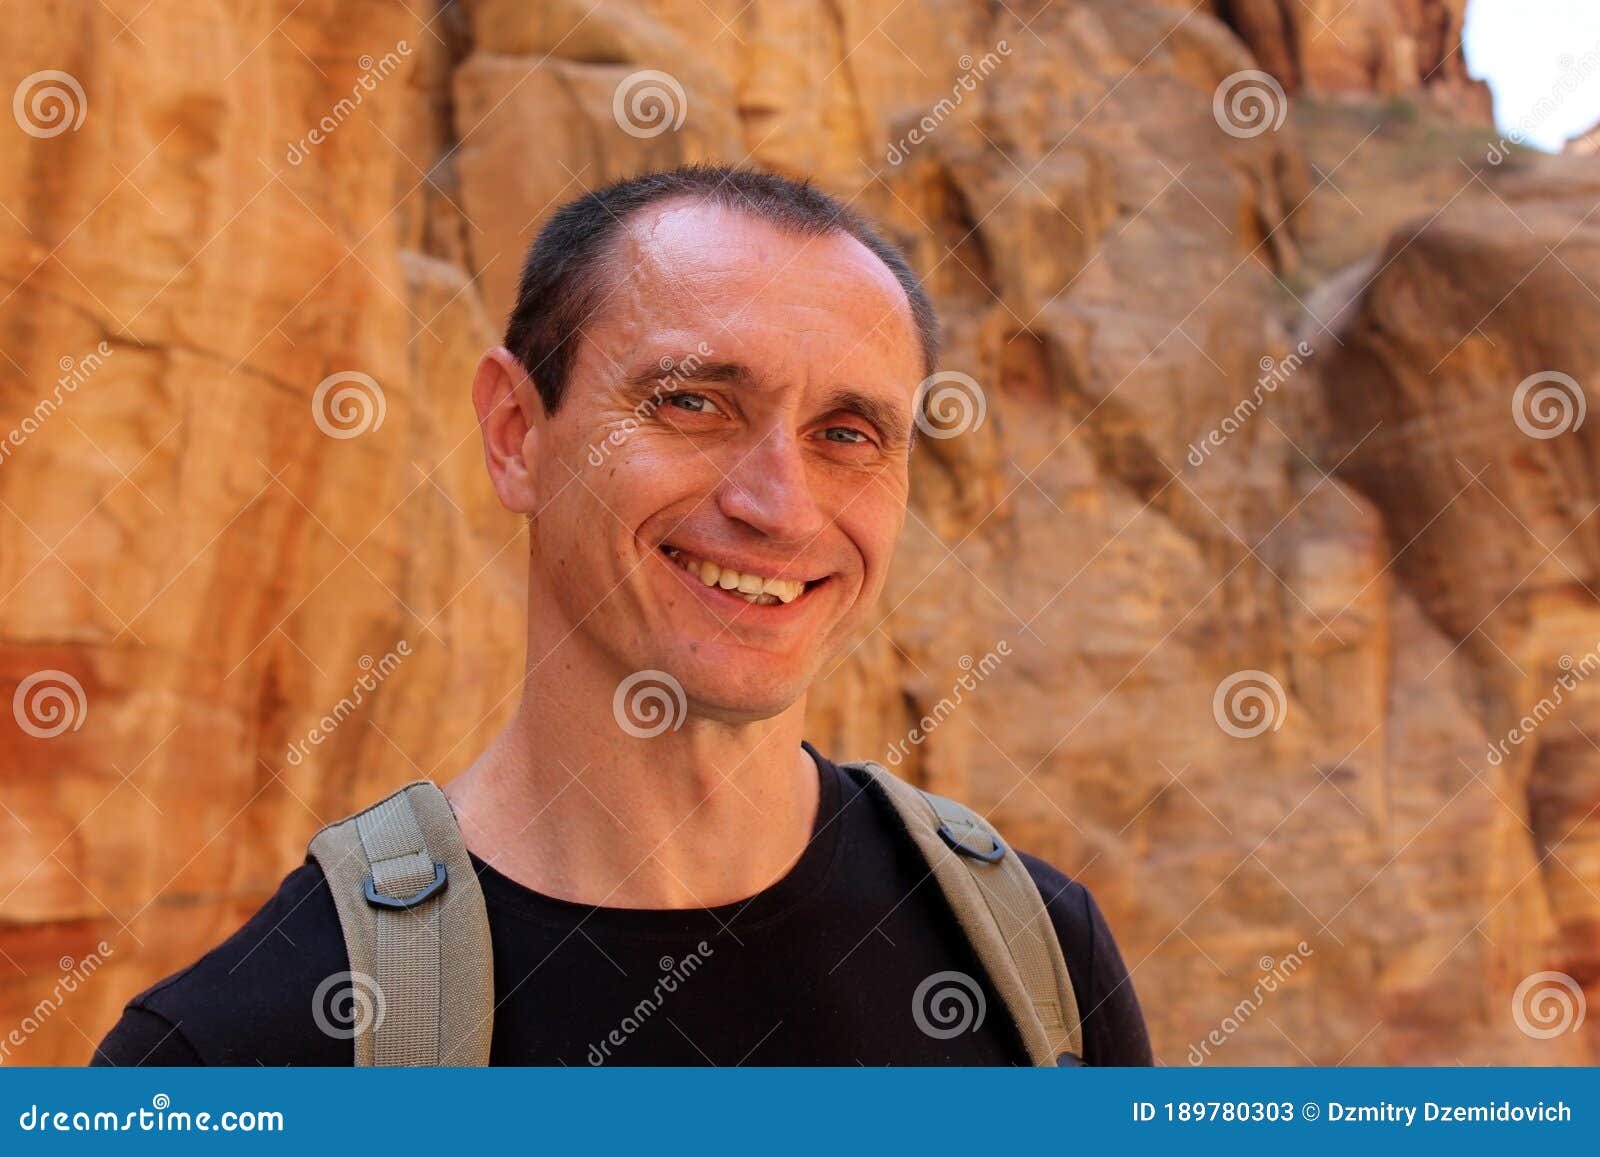 Sonriente Turista Europeo Con Ropa Negra Con Mochila En Petra En Jordania  Durante Un Viaje. Fondo Hermoso Imagen de archivo - Imagen de salud,  escalada: 189780303